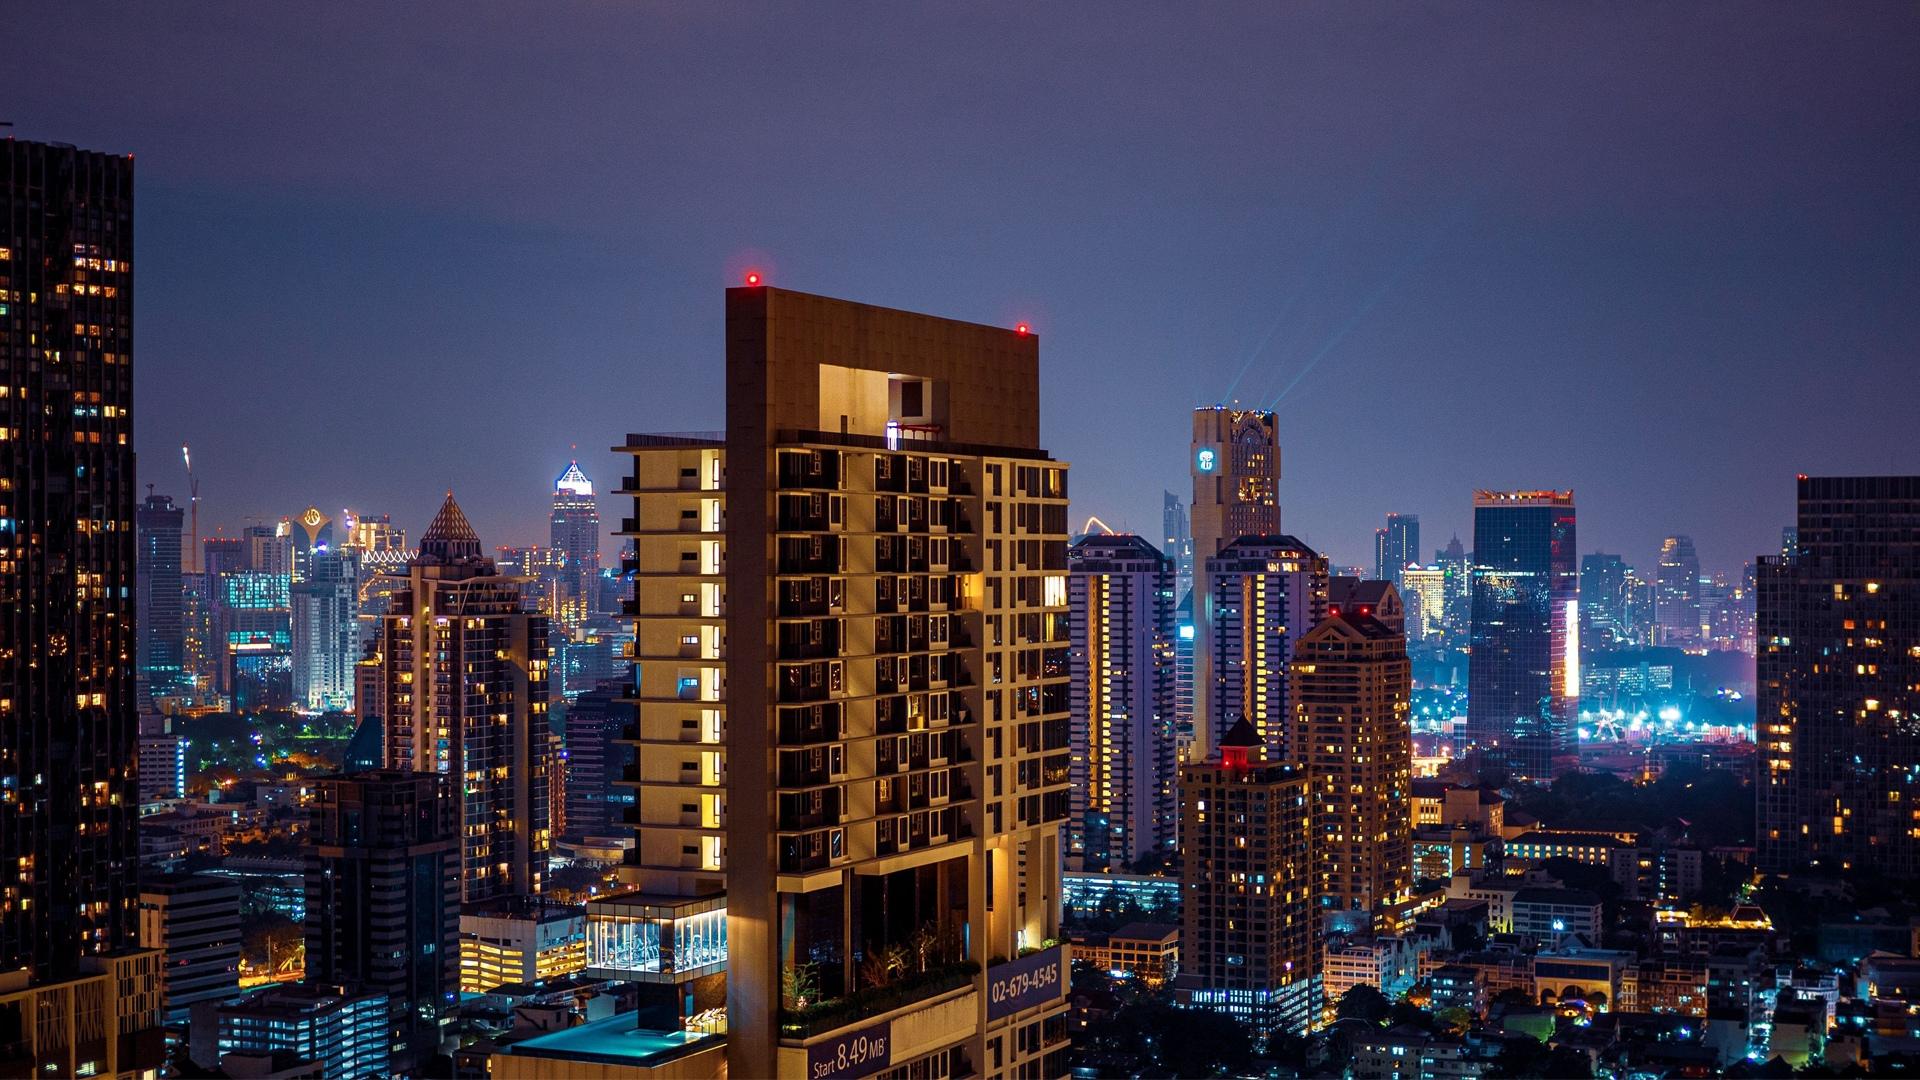 泰国曼谷霓虹璀璨城市夜景图片桌面壁纸